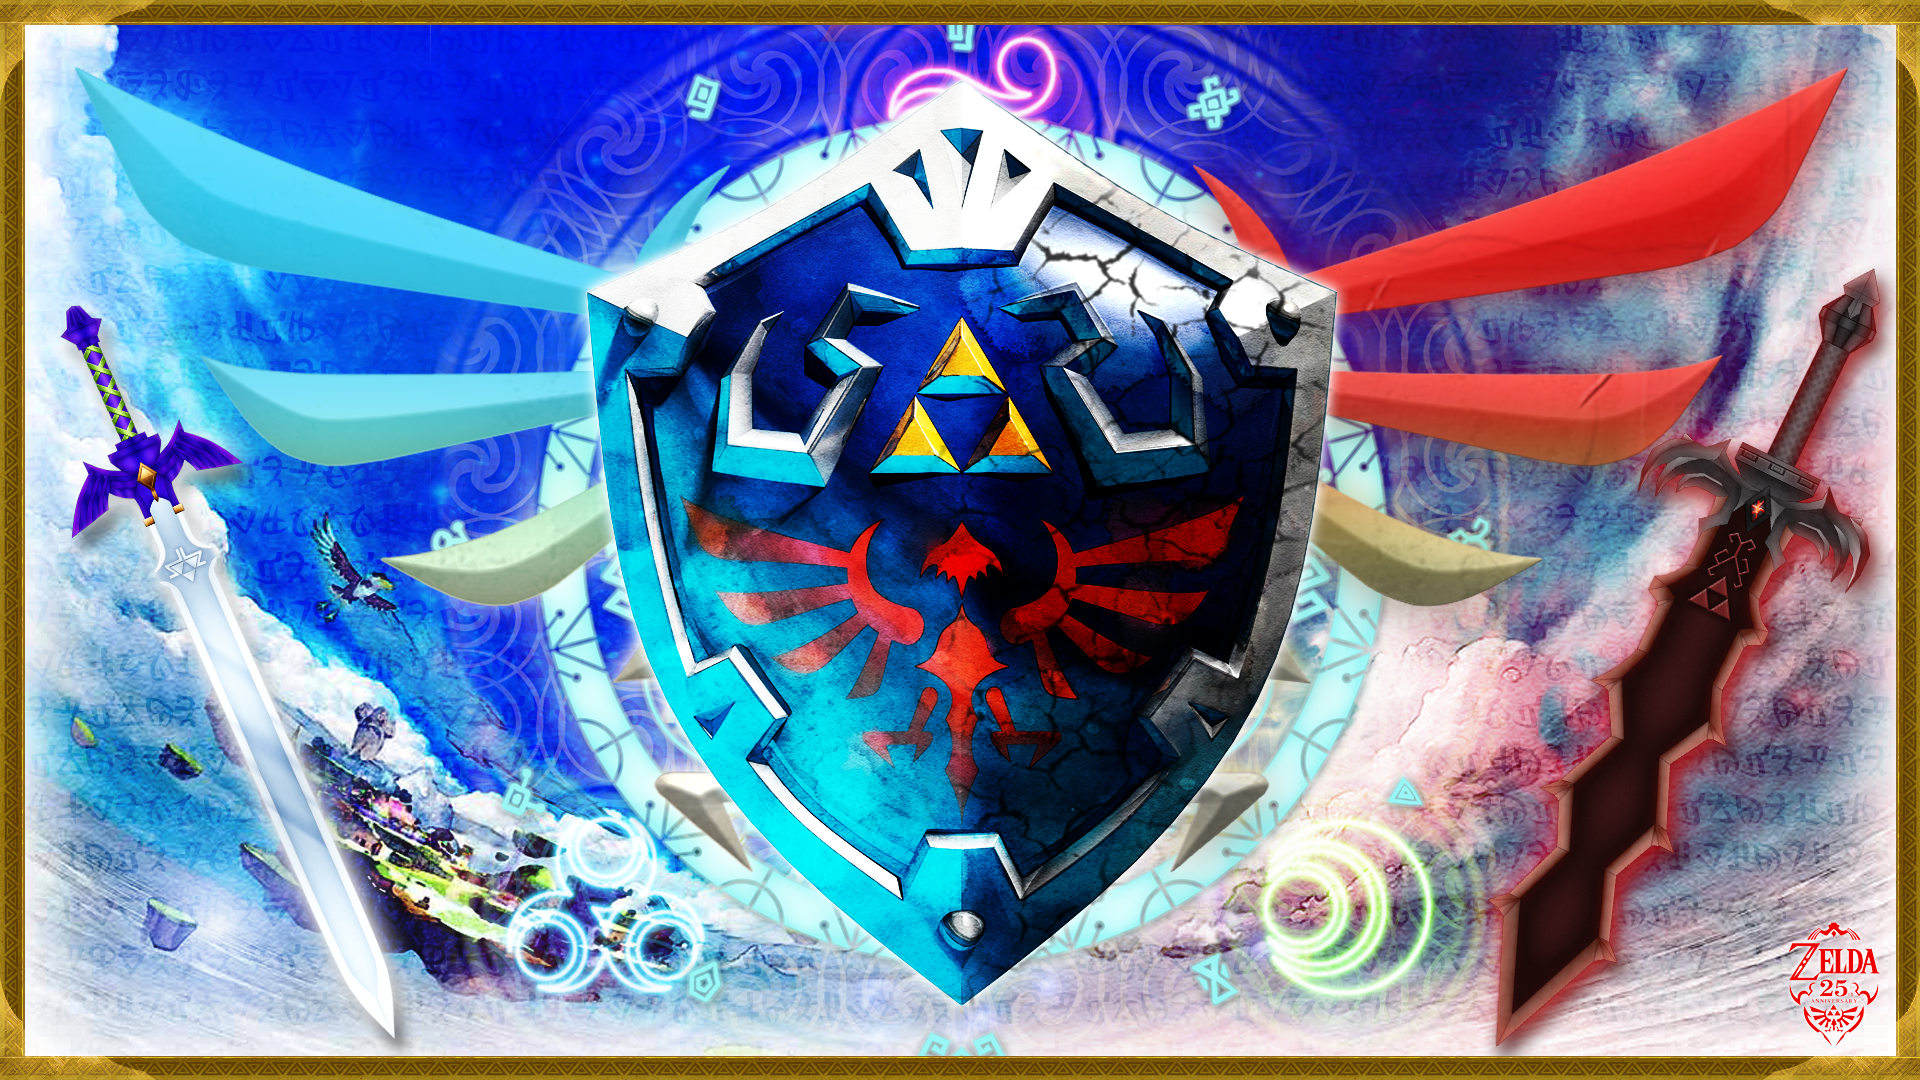 The Legend Of Zelda: Skyward Sword Wallpaper